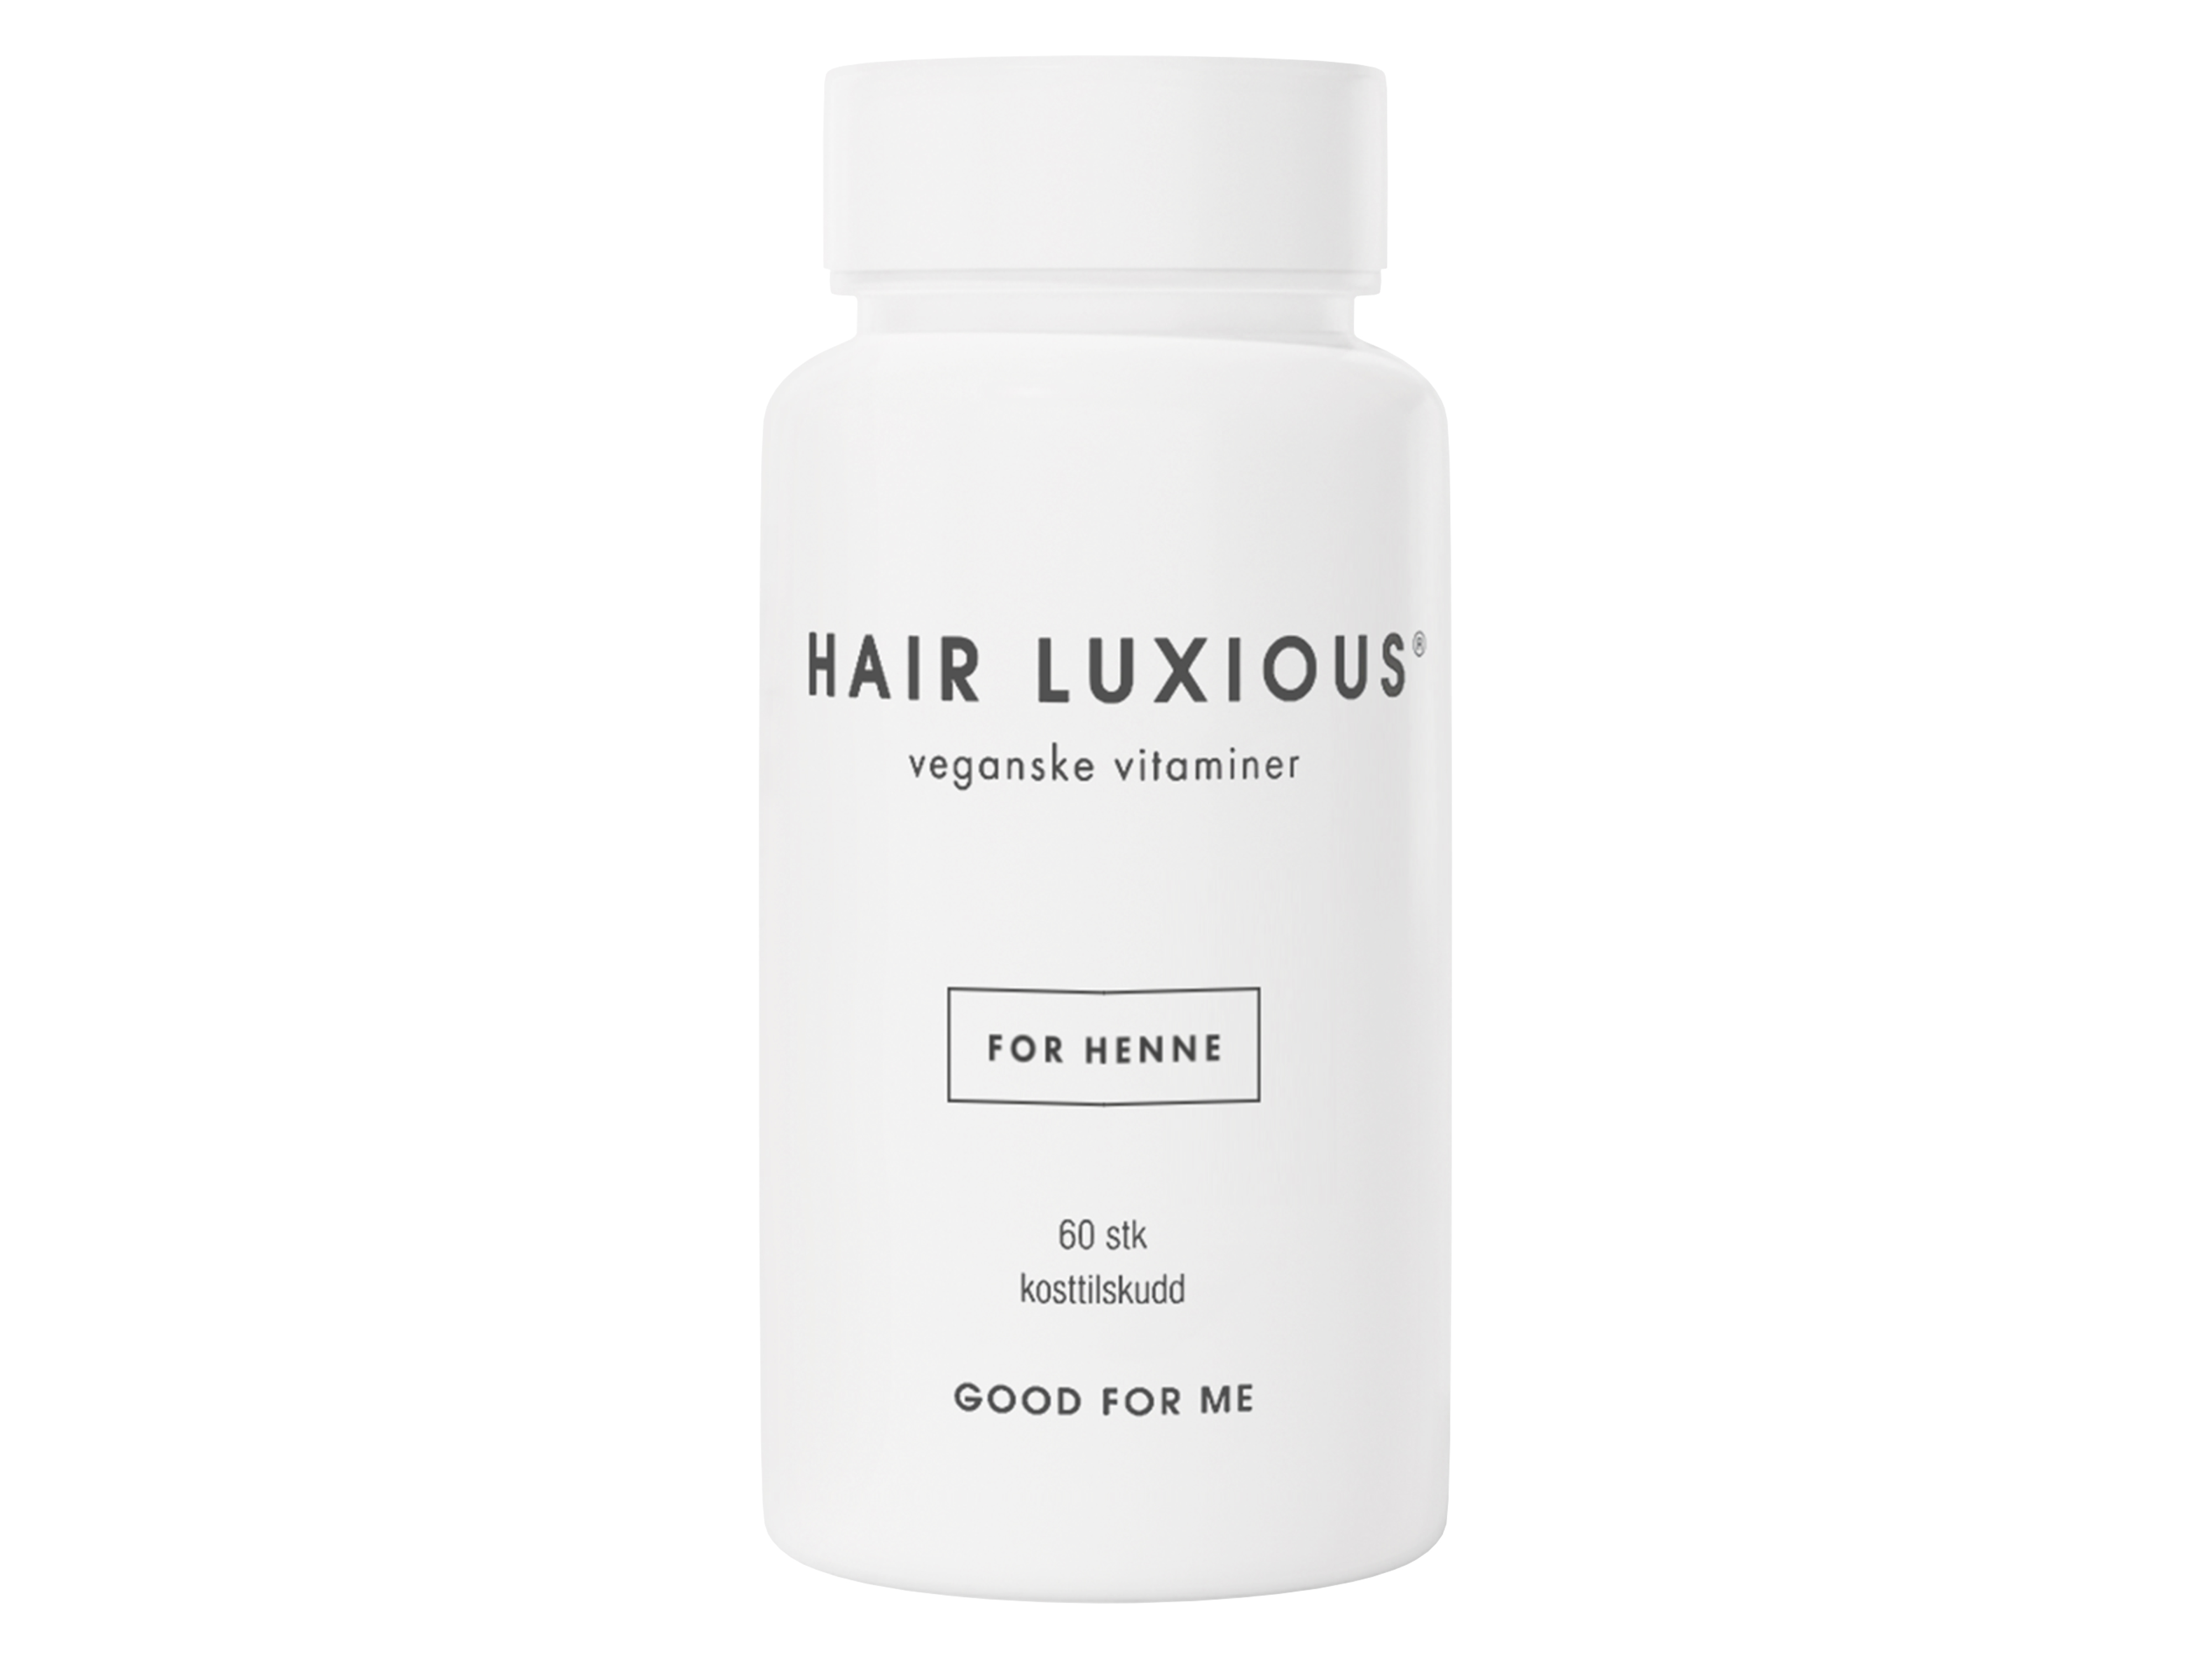 Hair luxious Veganske vitaminer for henne, 60 tabletter